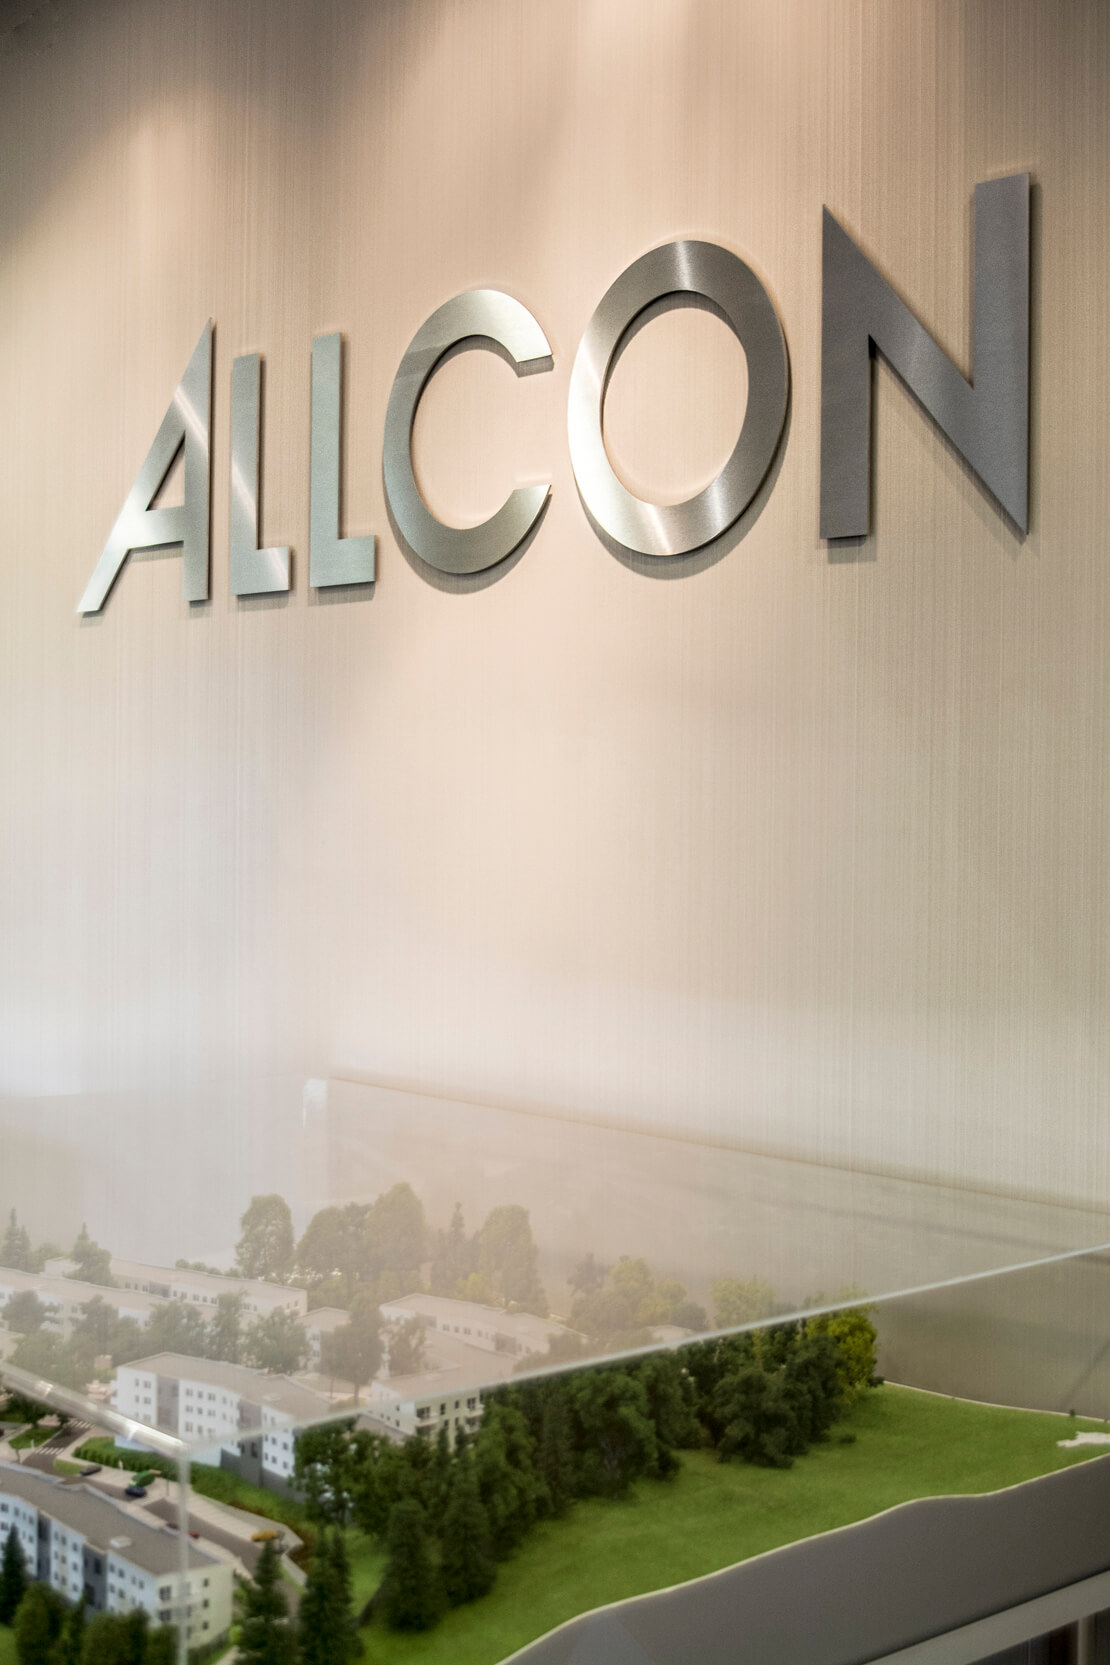 Allcon - Allcon - Lettere spaziali in metallo